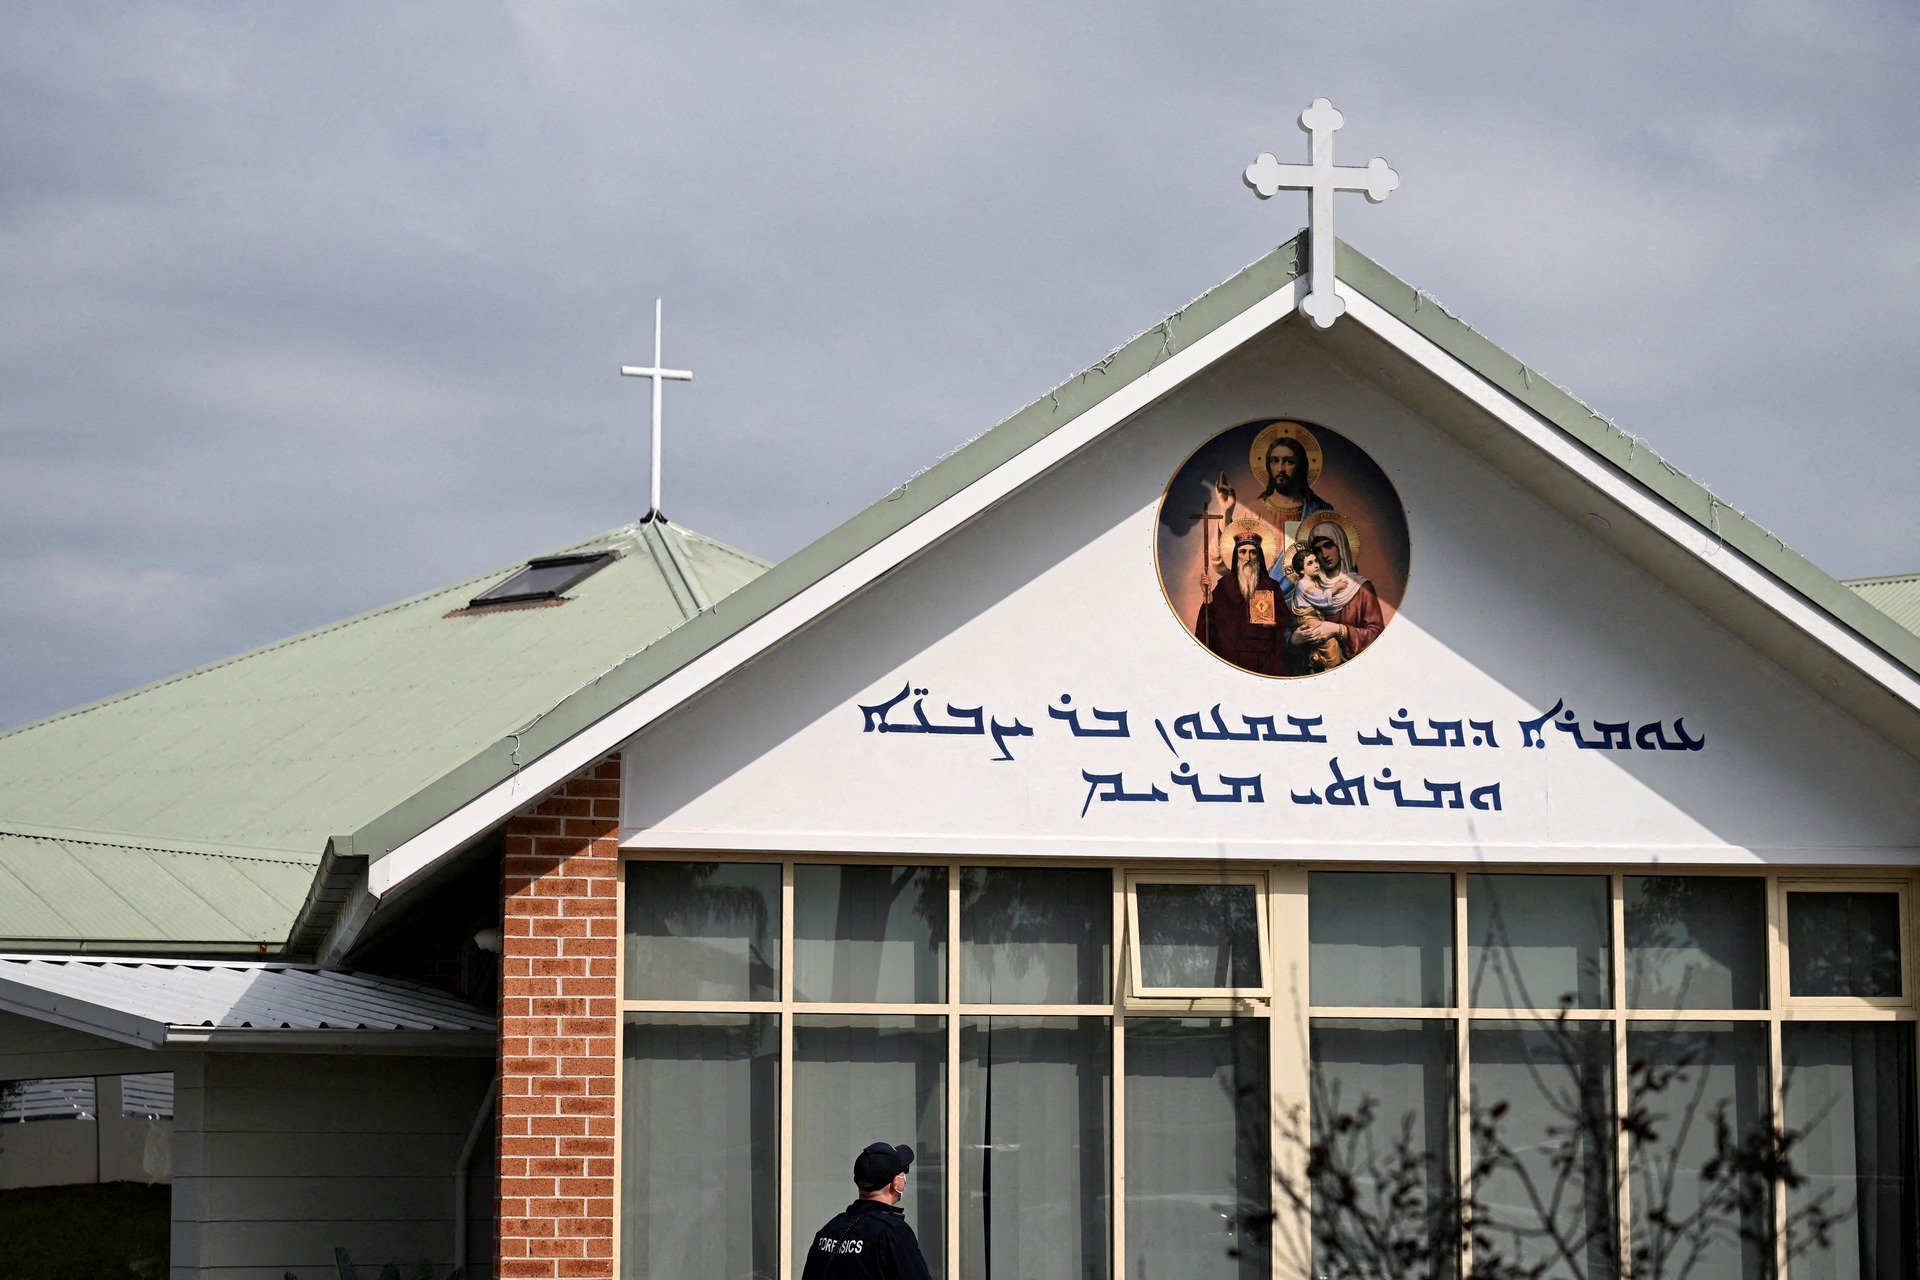 澳洲法院驳回申请  不延长屏蔽主教被刺帖文庭令